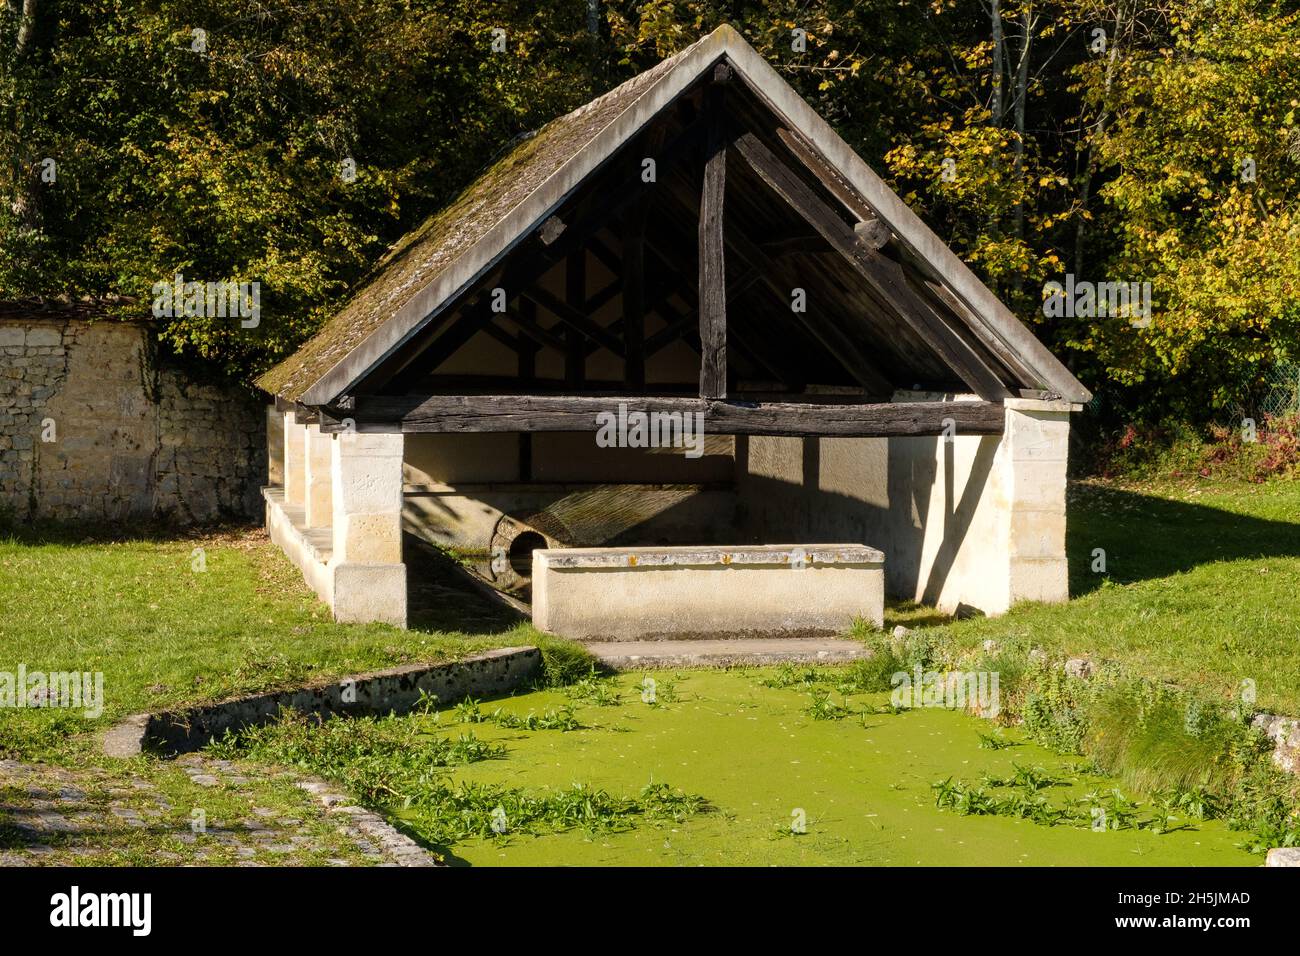 Die lavoir, Waschhaus, in Merry sur Yonne, Frankreich Stockfoto